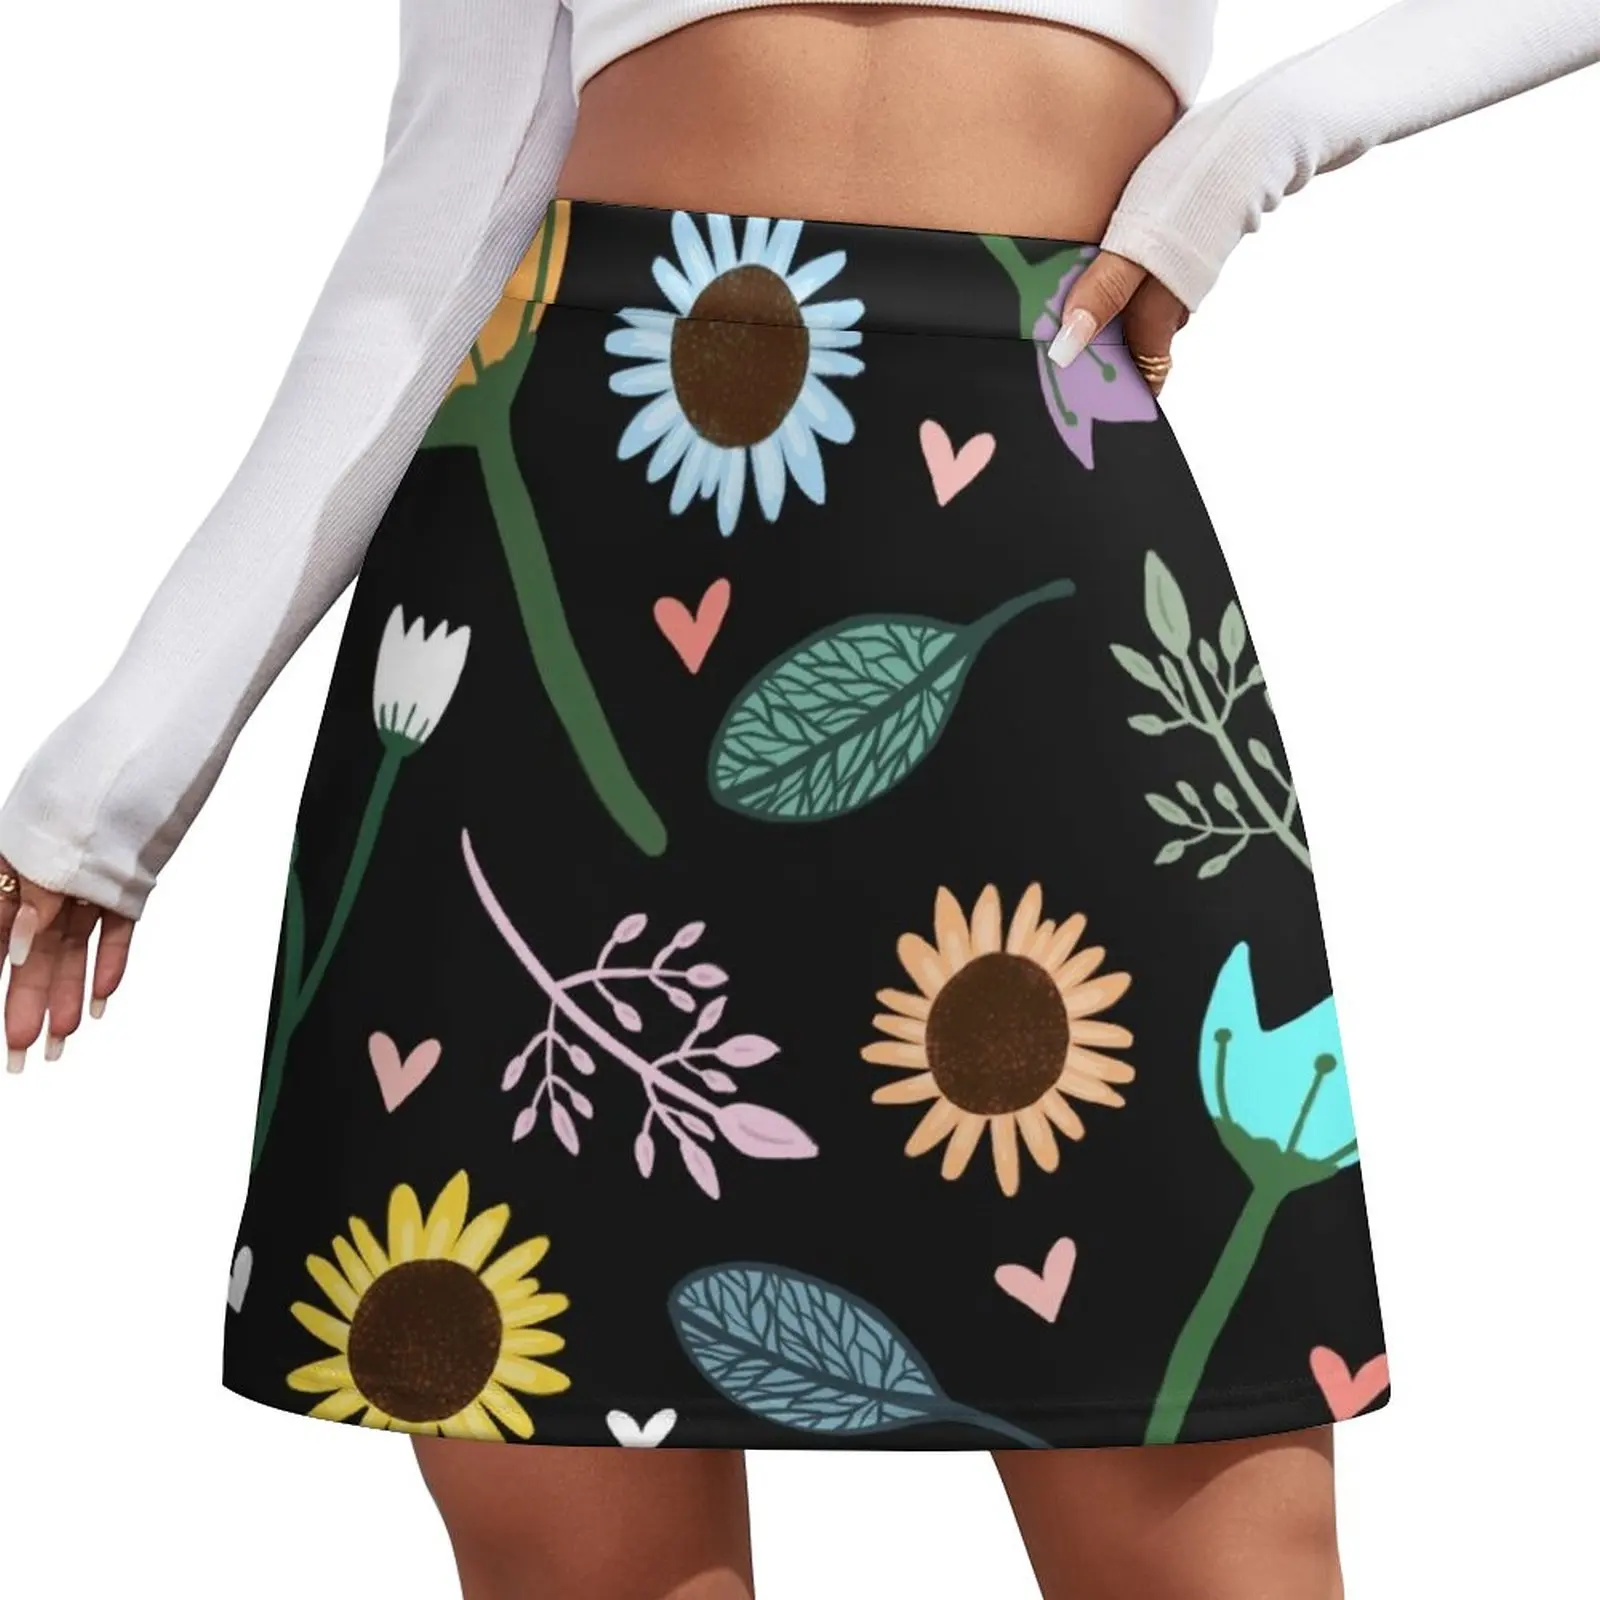 Happy Nature Print Mini Skirt korean style skirt for woman dress women summer Skirt satin